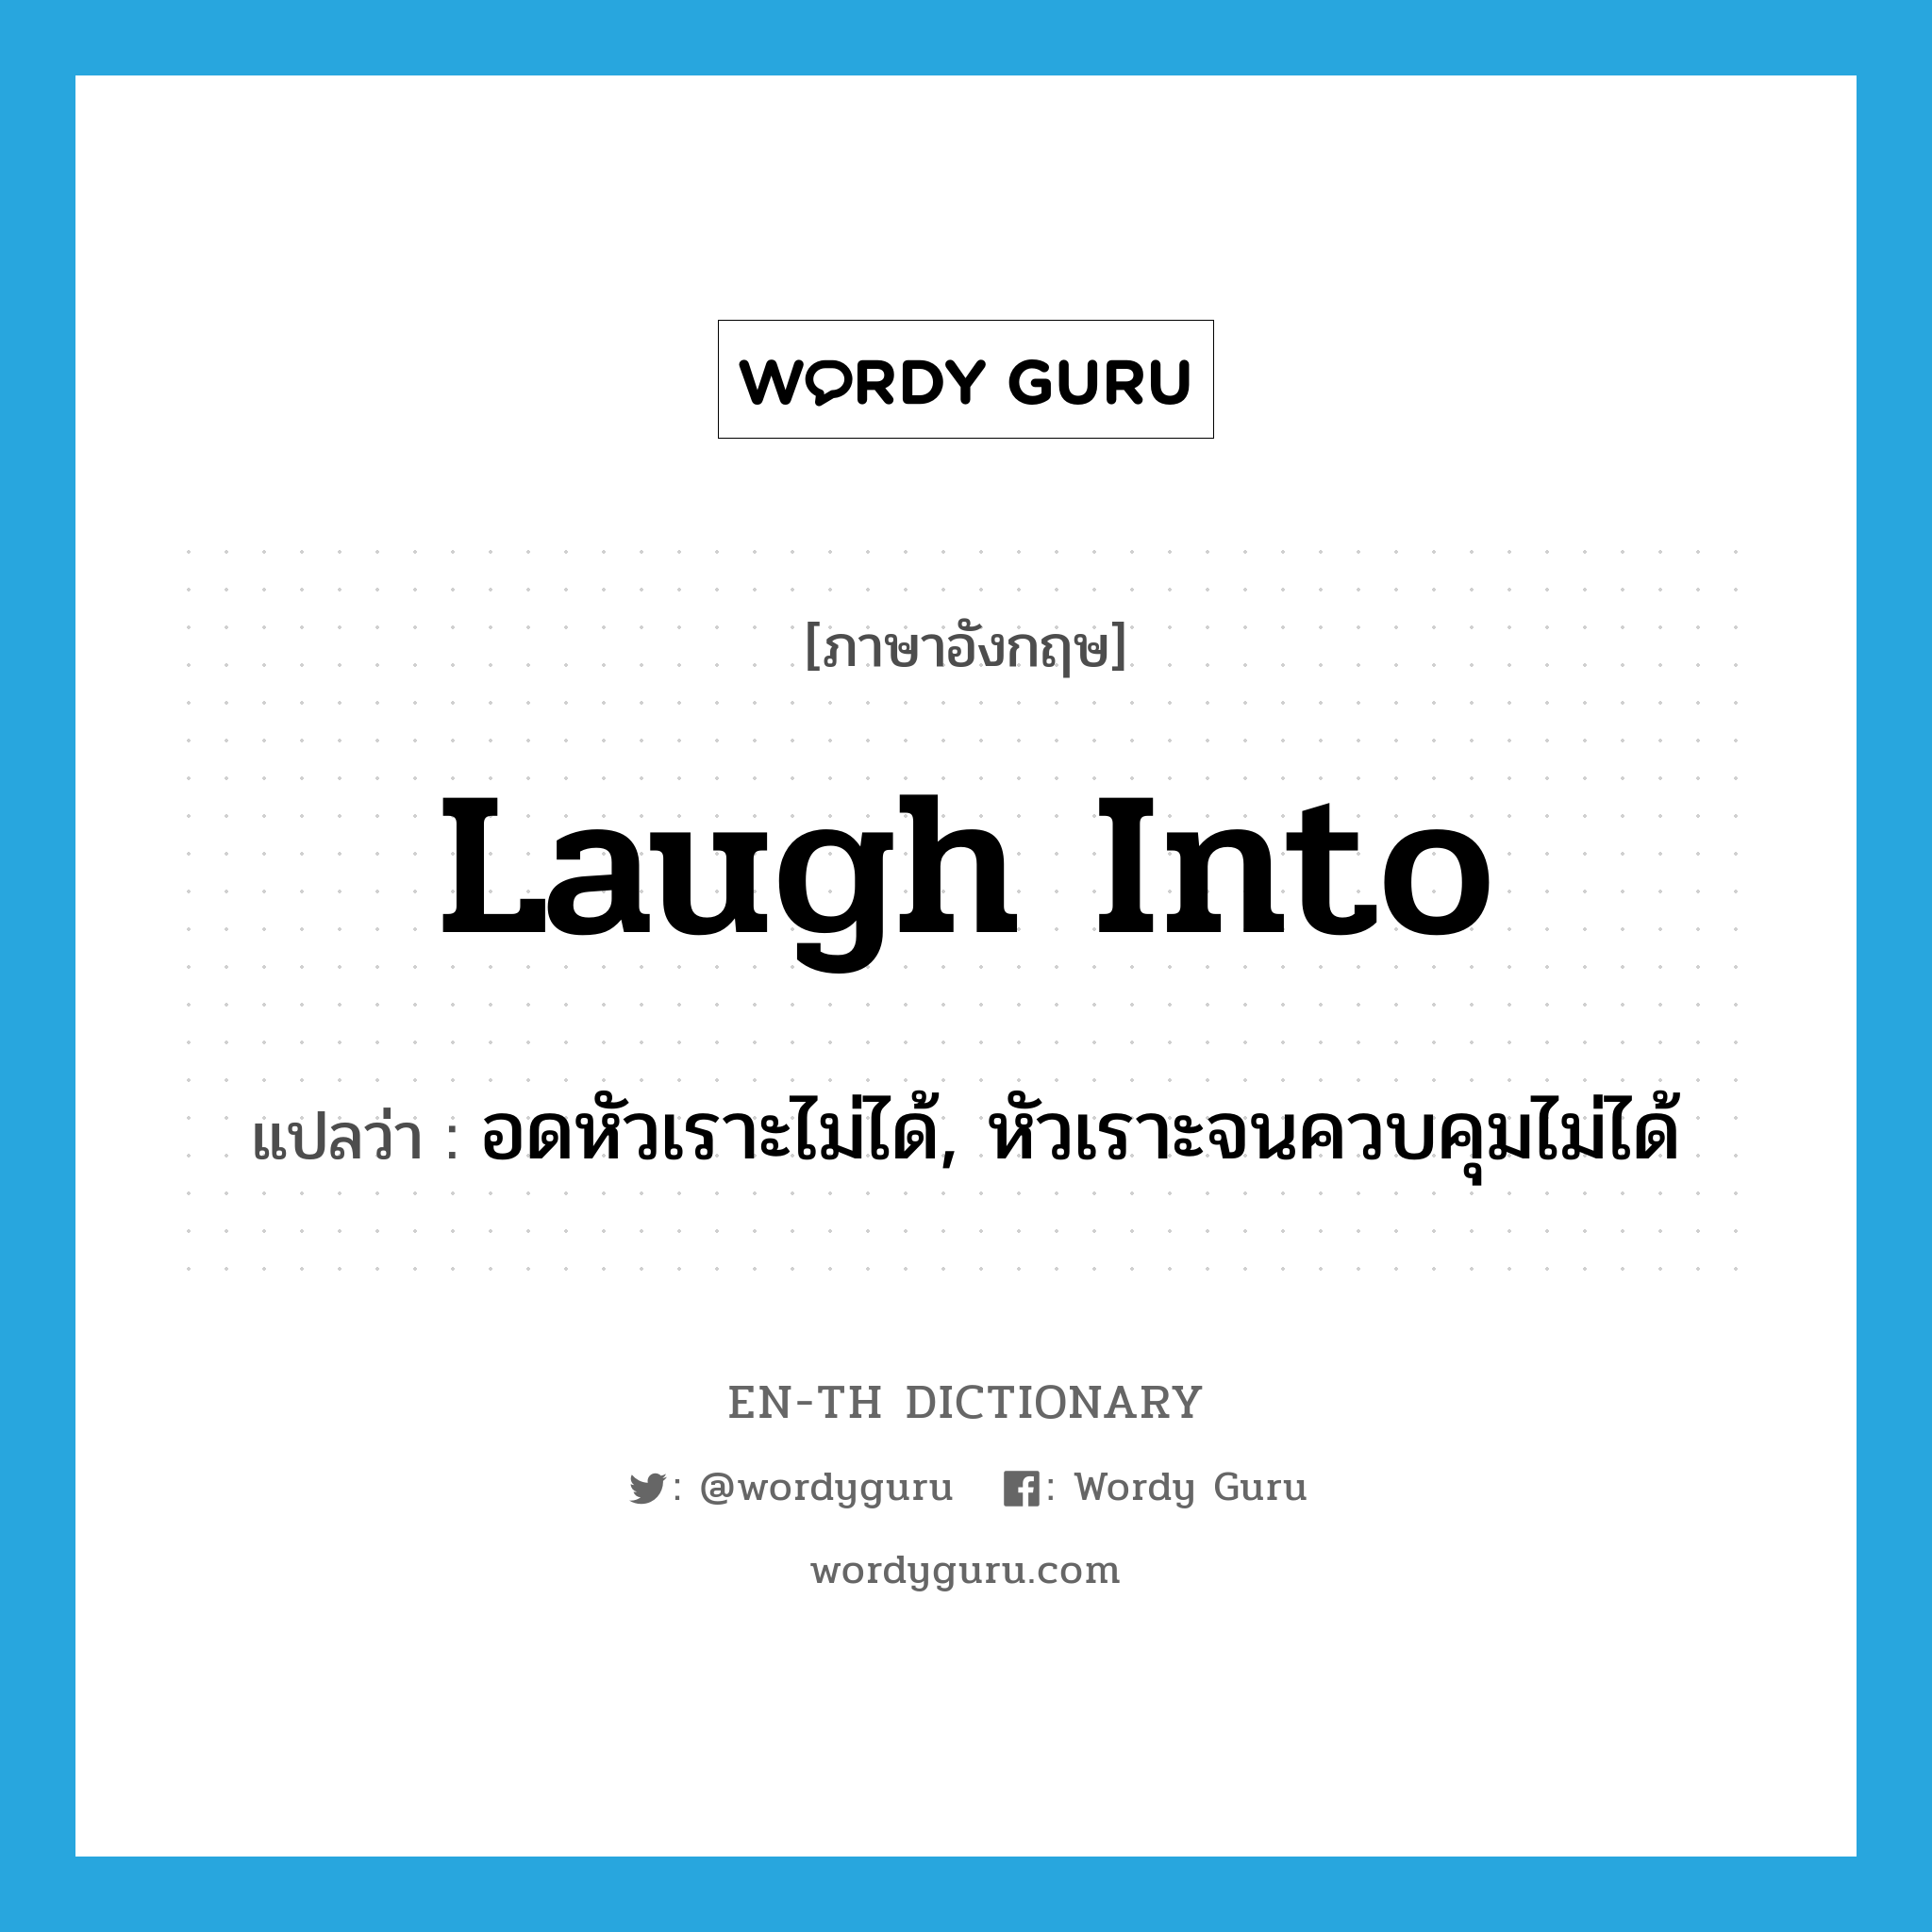 อดหัวเราะไม่ได้, หัวเราะจนควบคุมไม่ได้ ภาษาอังกฤษ?, คำศัพท์ภาษาอังกฤษ อดหัวเราะไม่ได้, หัวเราะจนควบคุมไม่ได้ แปลว่า laugh into ประเภท PHRV หมวด PHRV